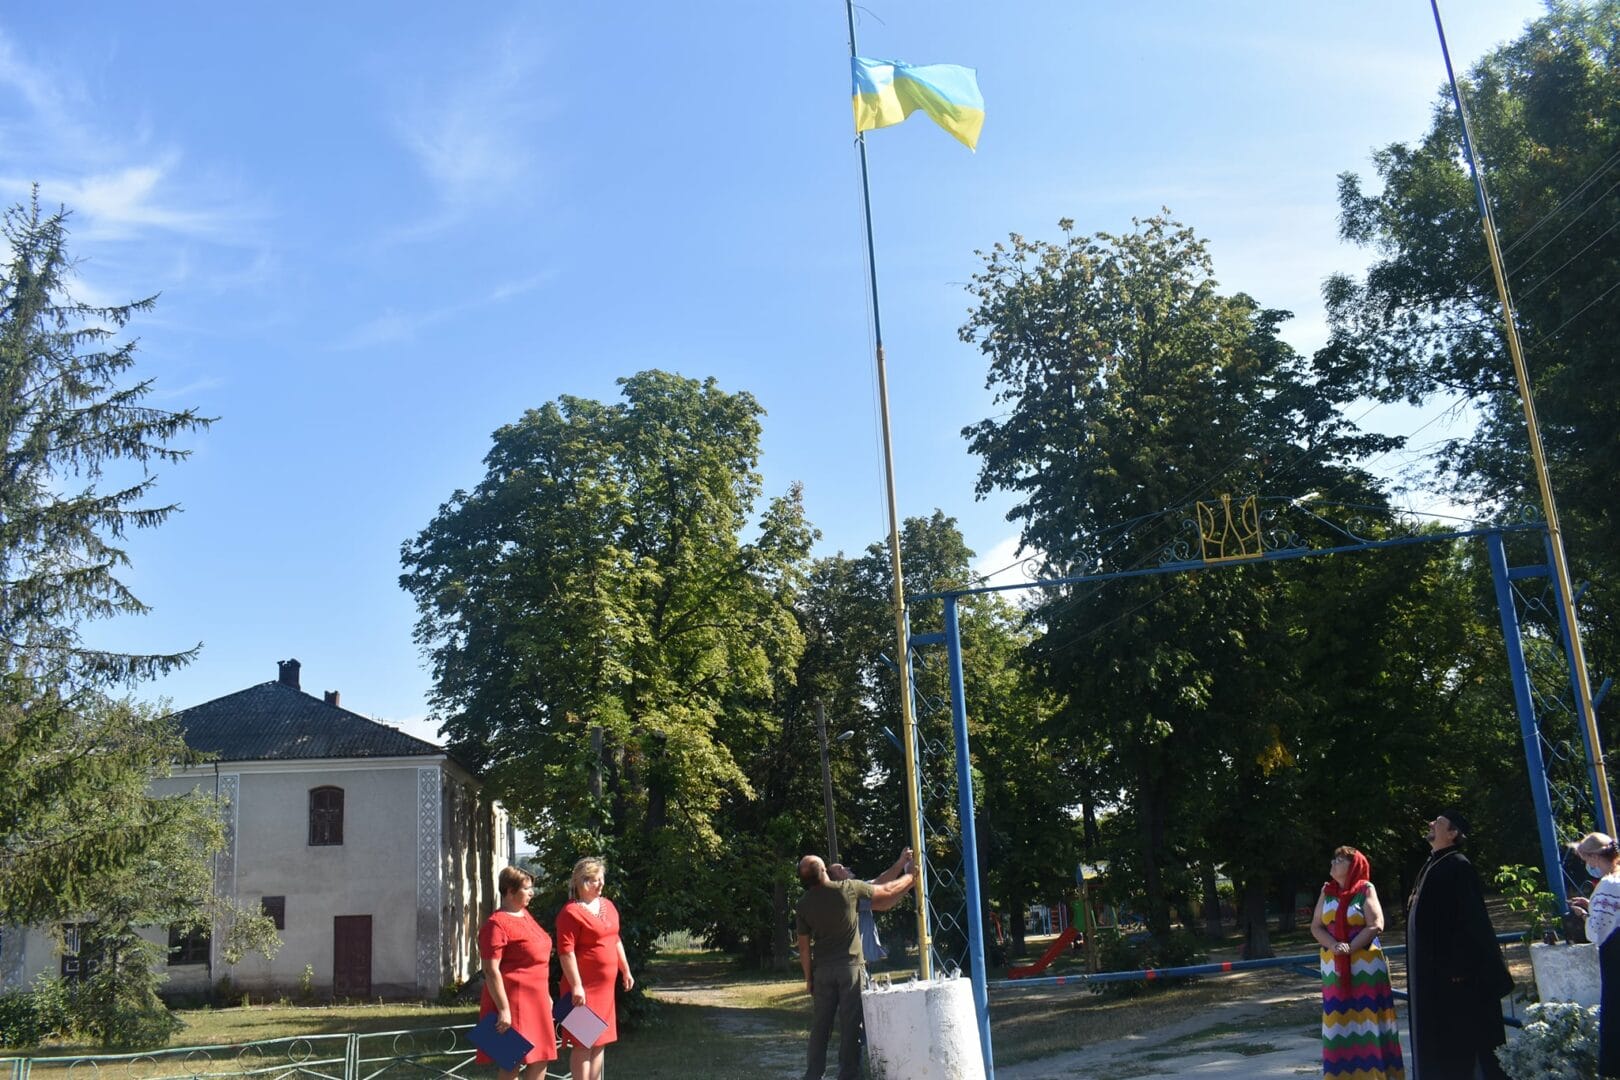 Raising the flag in the Shpykiv Community